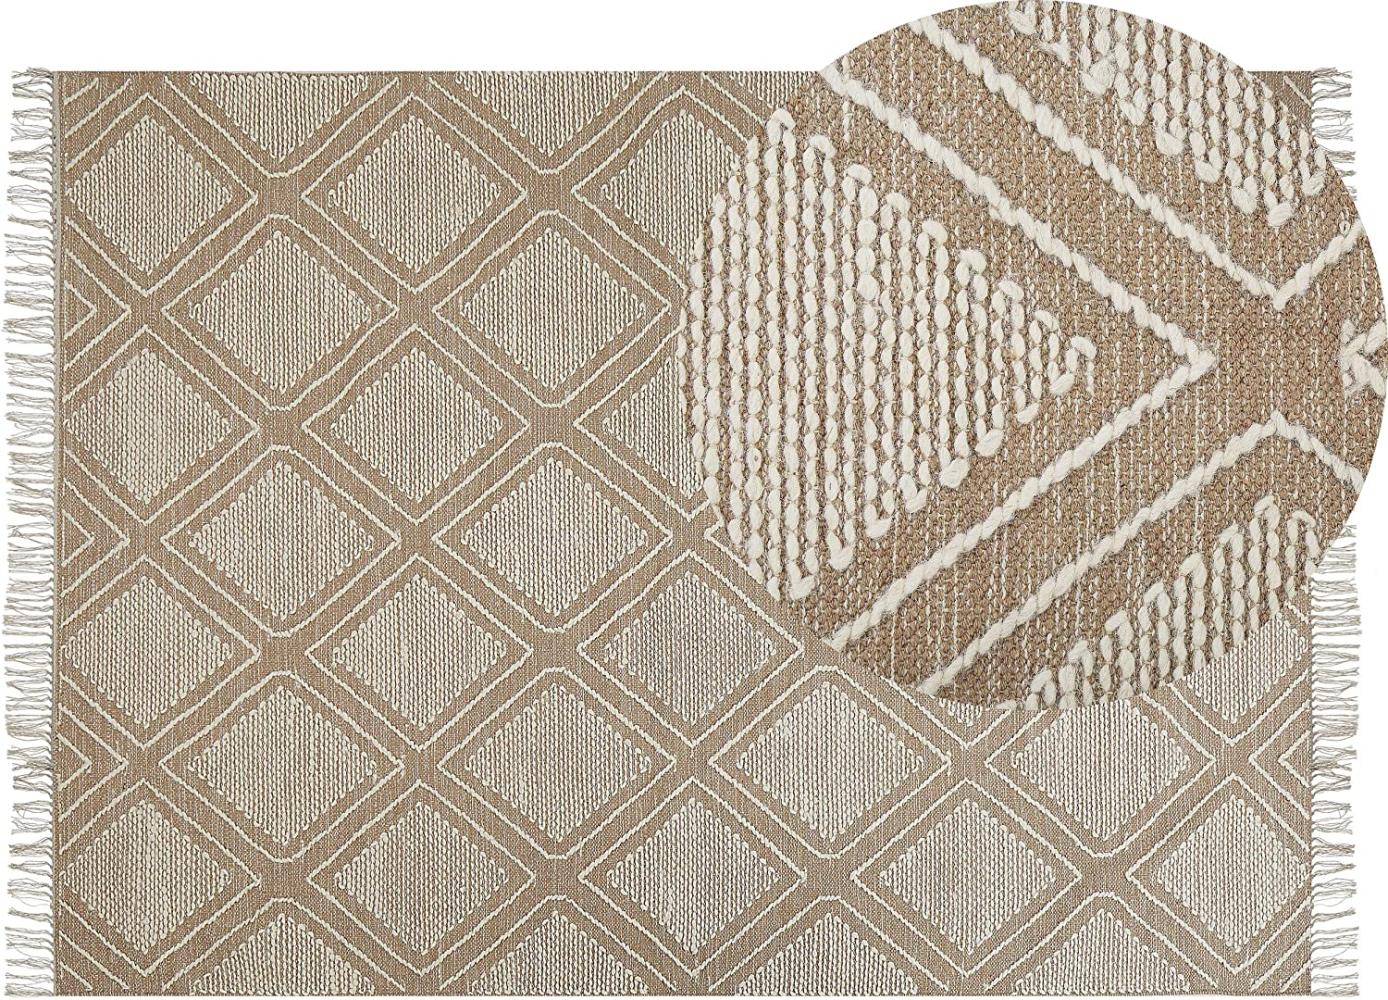 Teppich Baumwolle beige weiß 140 x 200 cm Kurzflor KACEM Bild 1